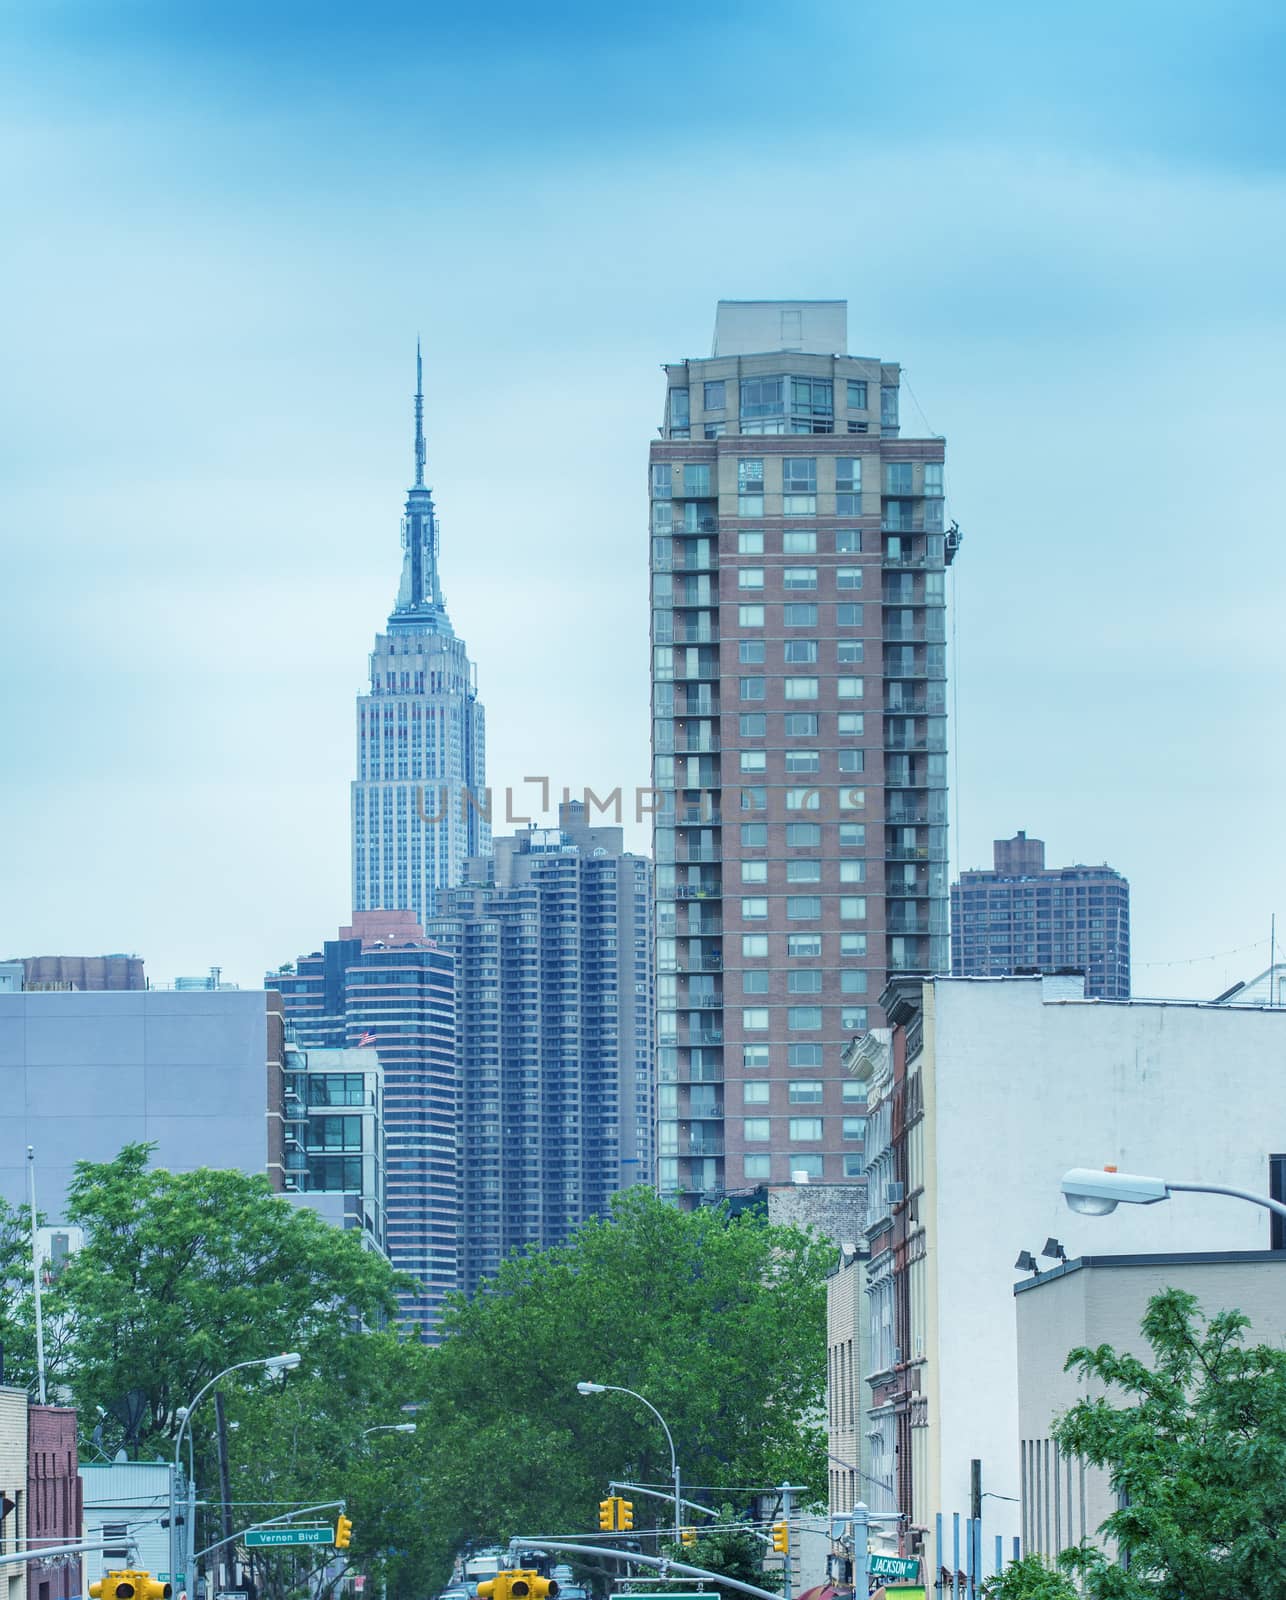 Midtown Manhattan skyline, New York City in summer season by jovannig